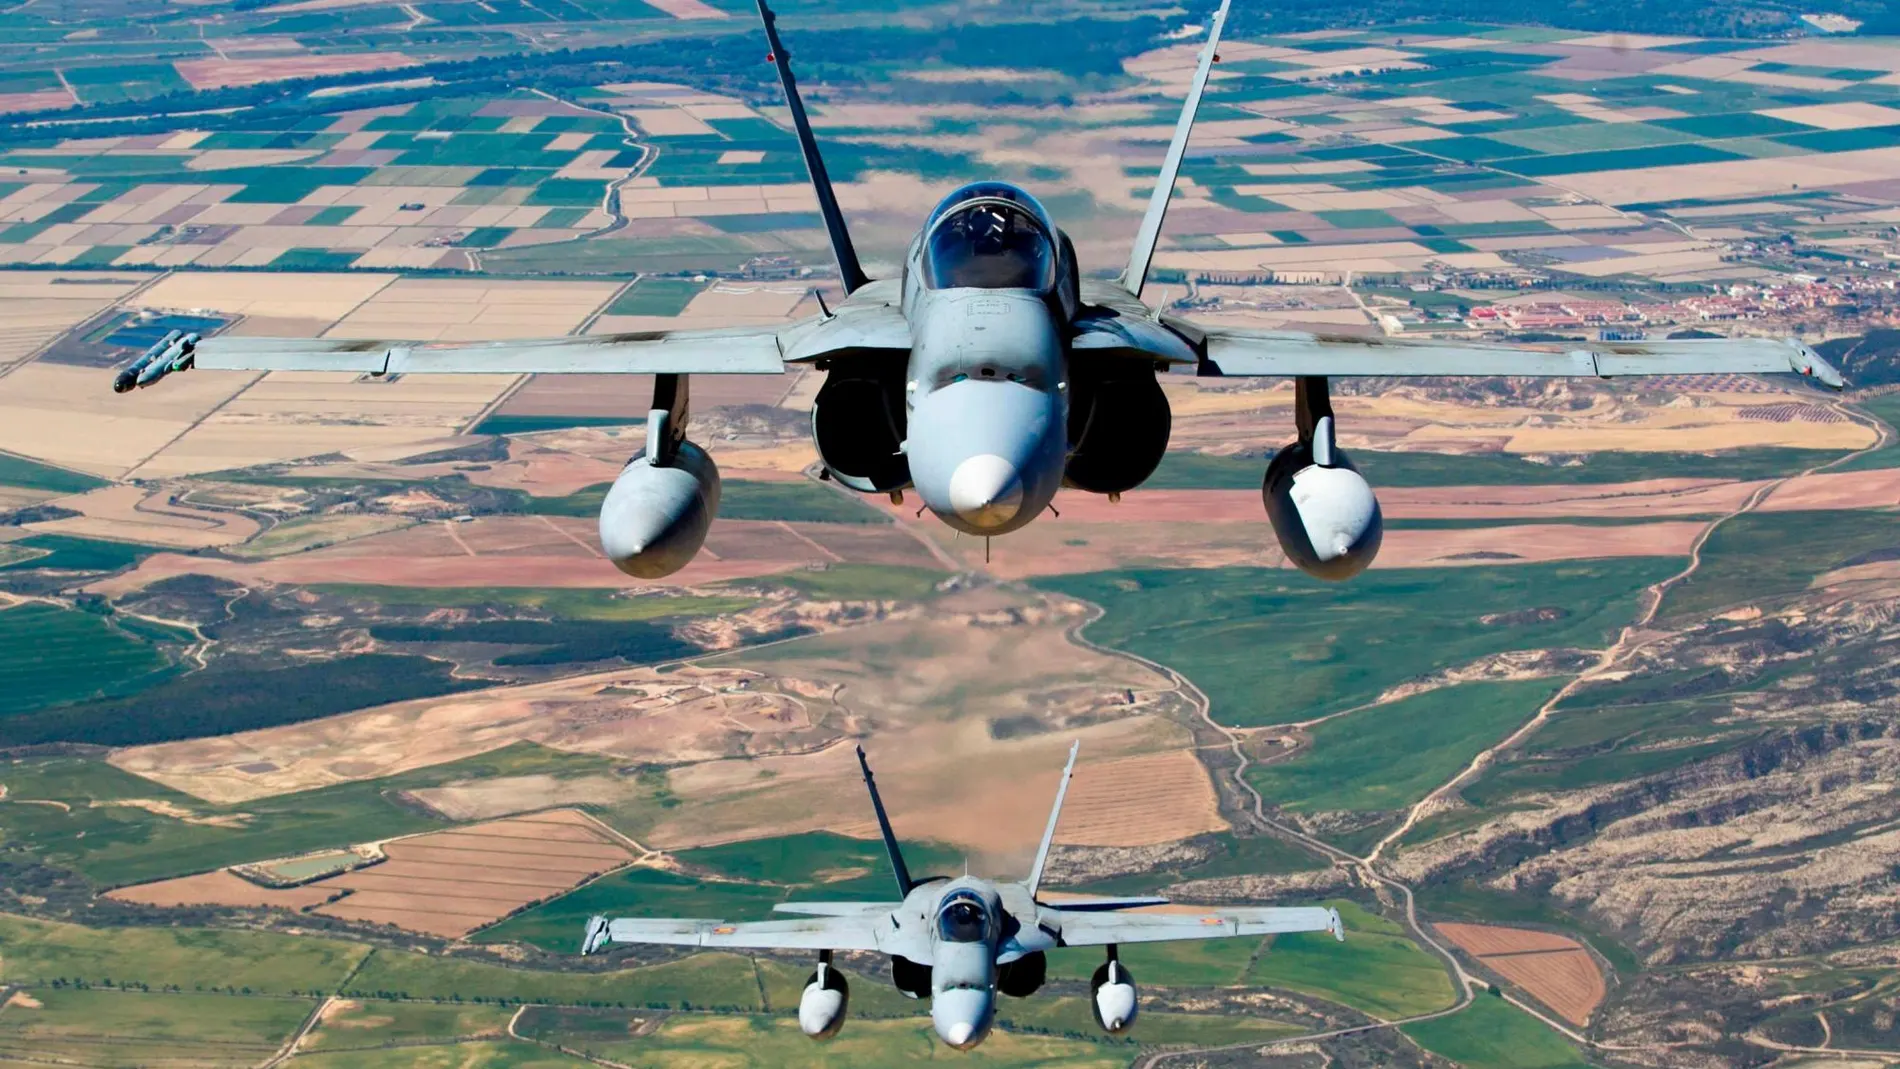 Dos aviones de combate F-18 en vuelo